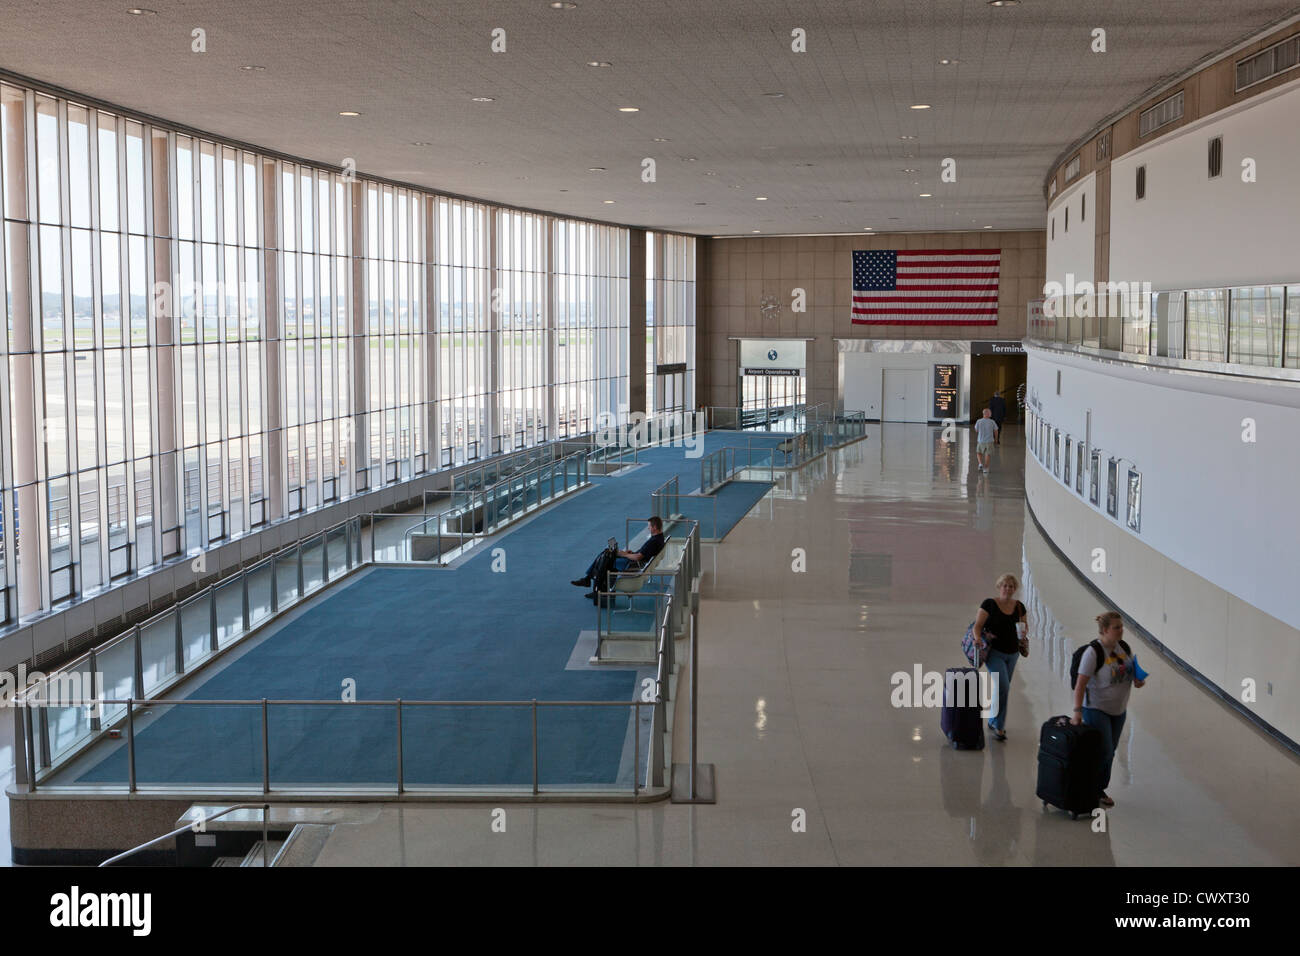 Ronald Reagan National Airport old terminal interior Stock Photo - Alamy